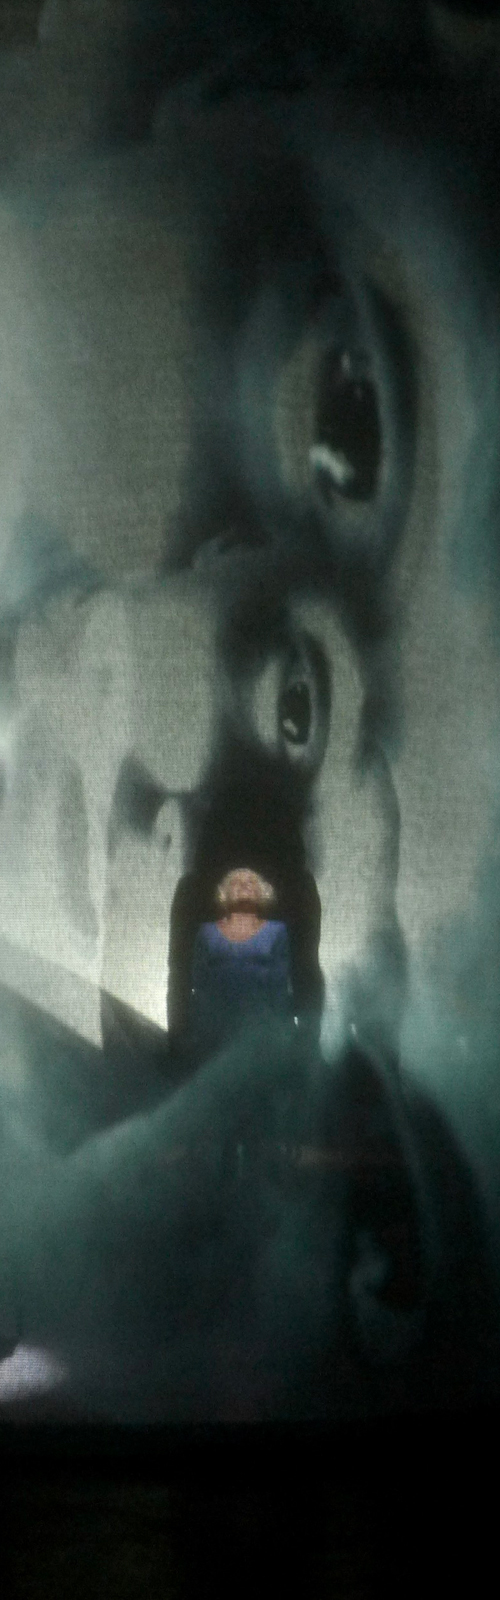 Sfondo nero, una proiezione fantasmatica di occhi e volti si sviluppa in verticale, al centro è riconoscibile una figura umana vestita di blu che guarda verso l'alto.